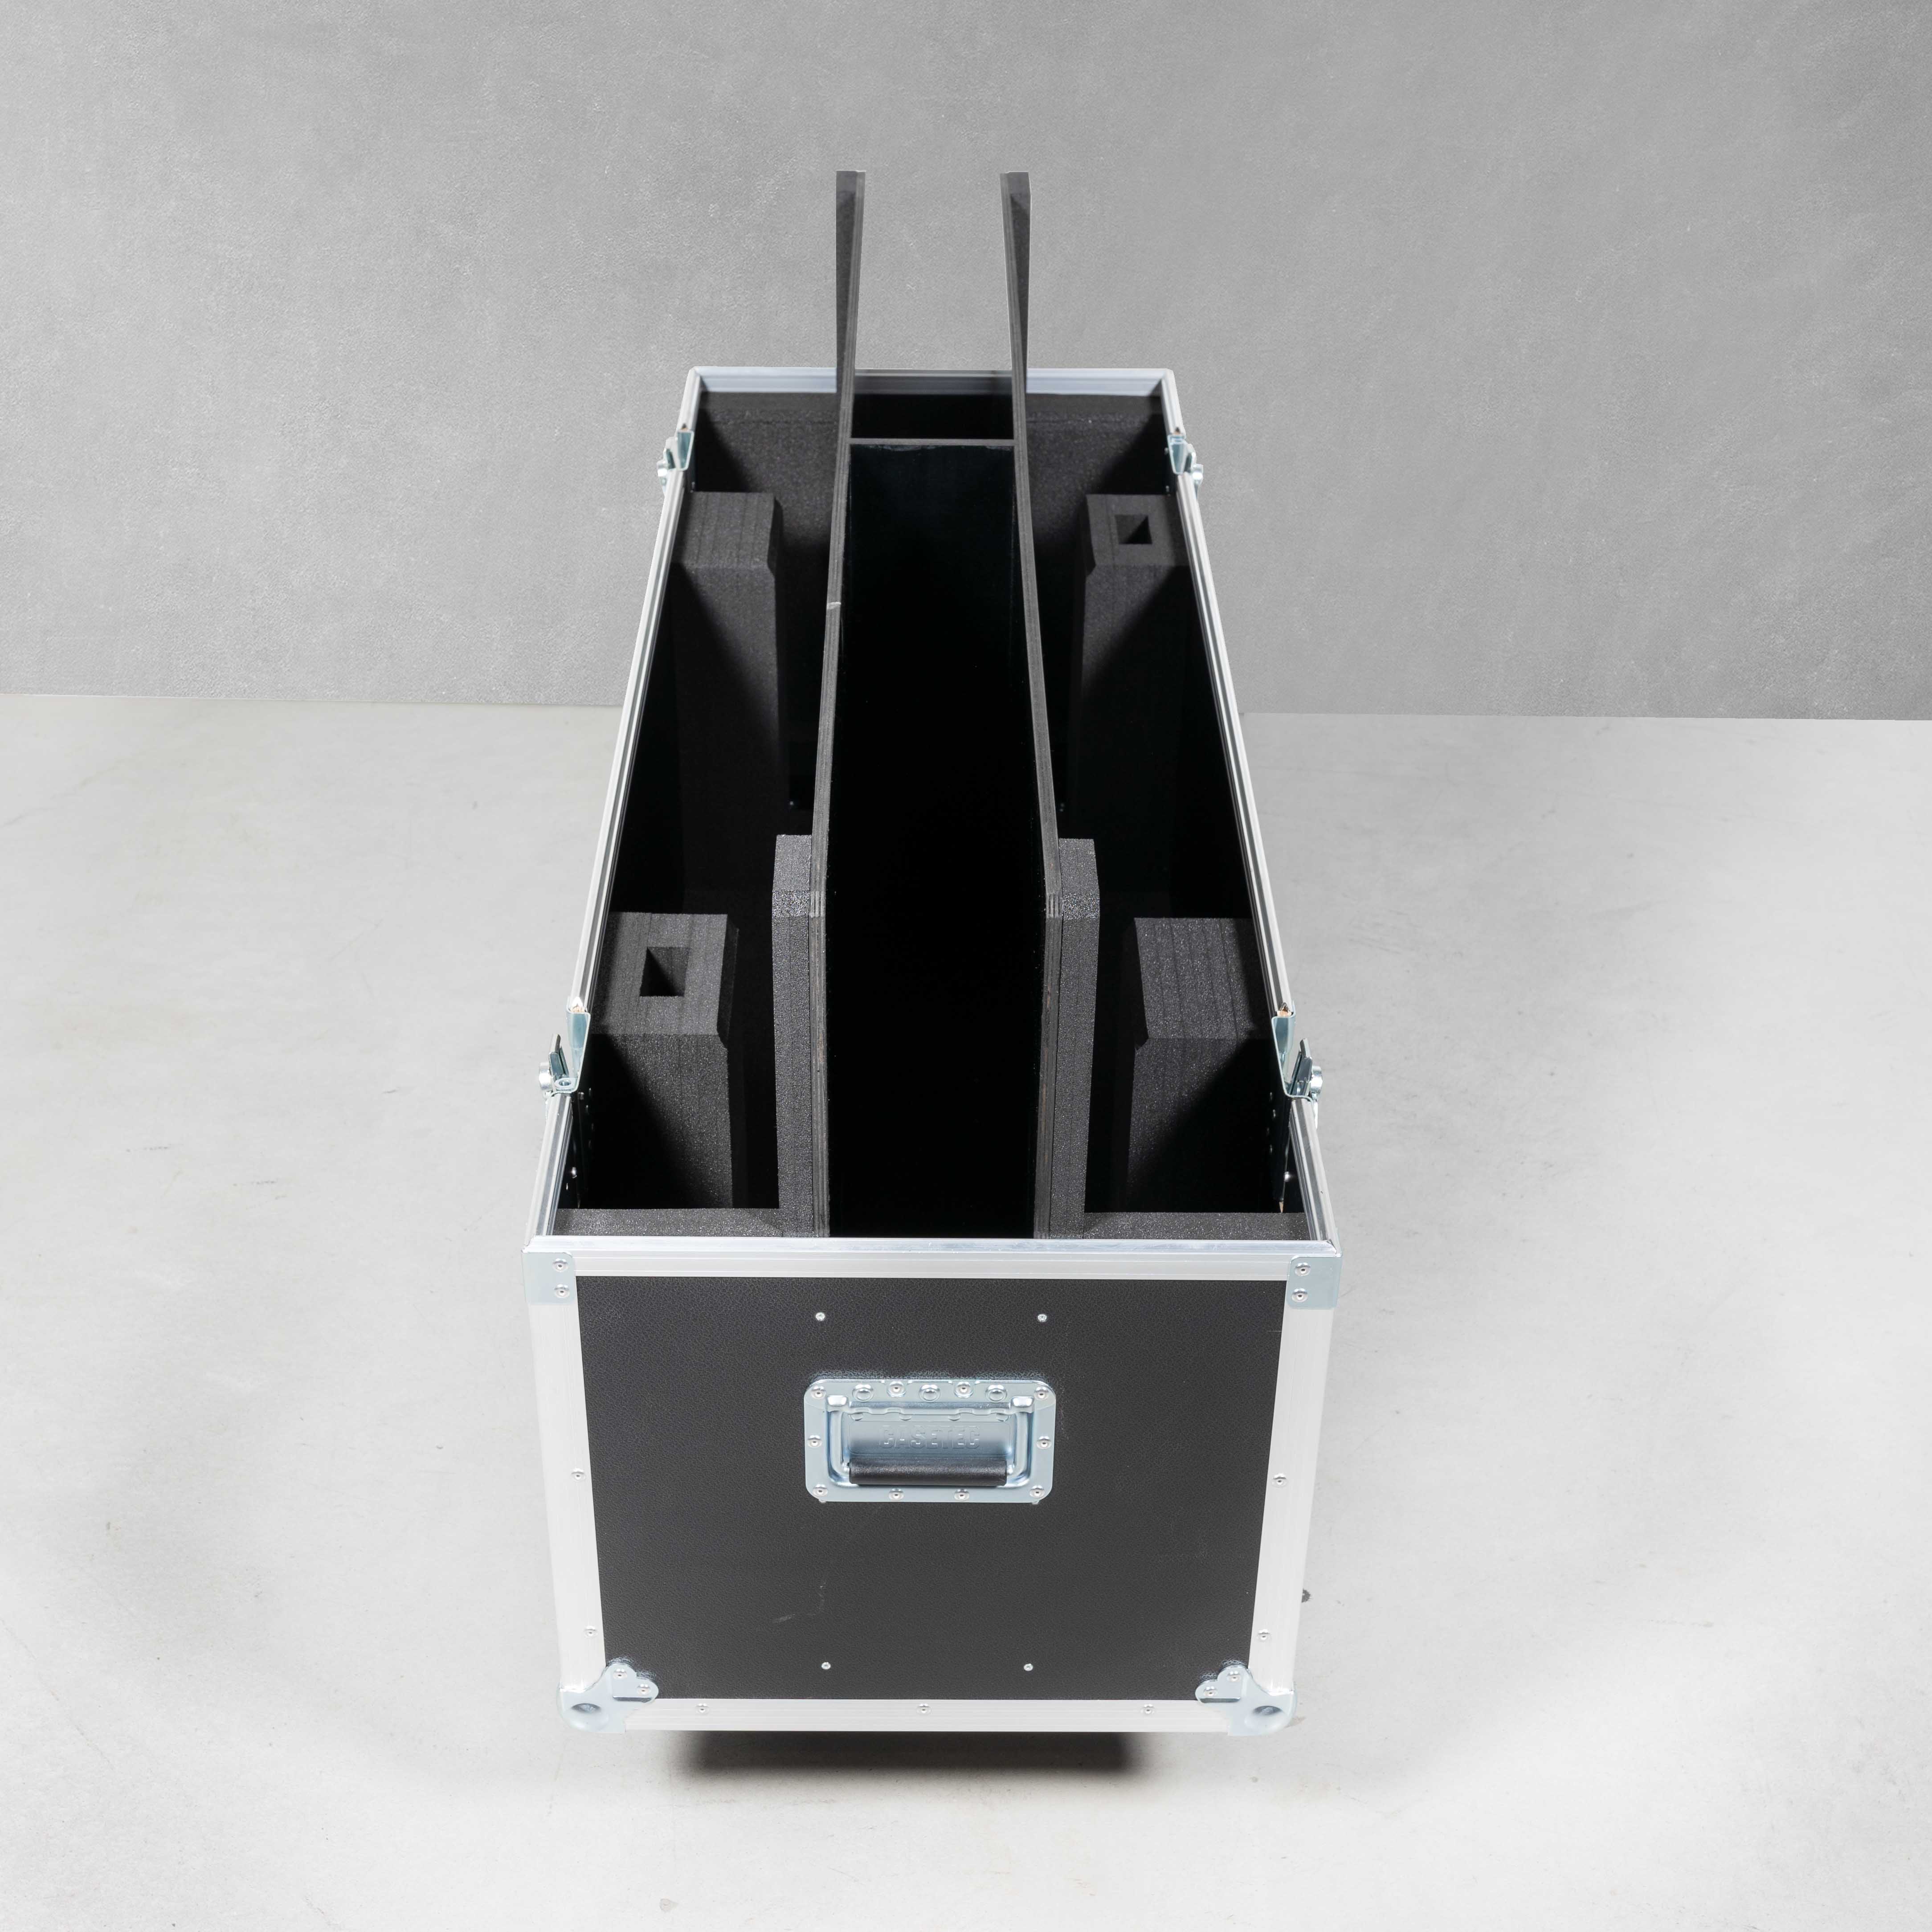 Flightcase für zwei Flachbildschirme 55" mit Zubehörfach mittig